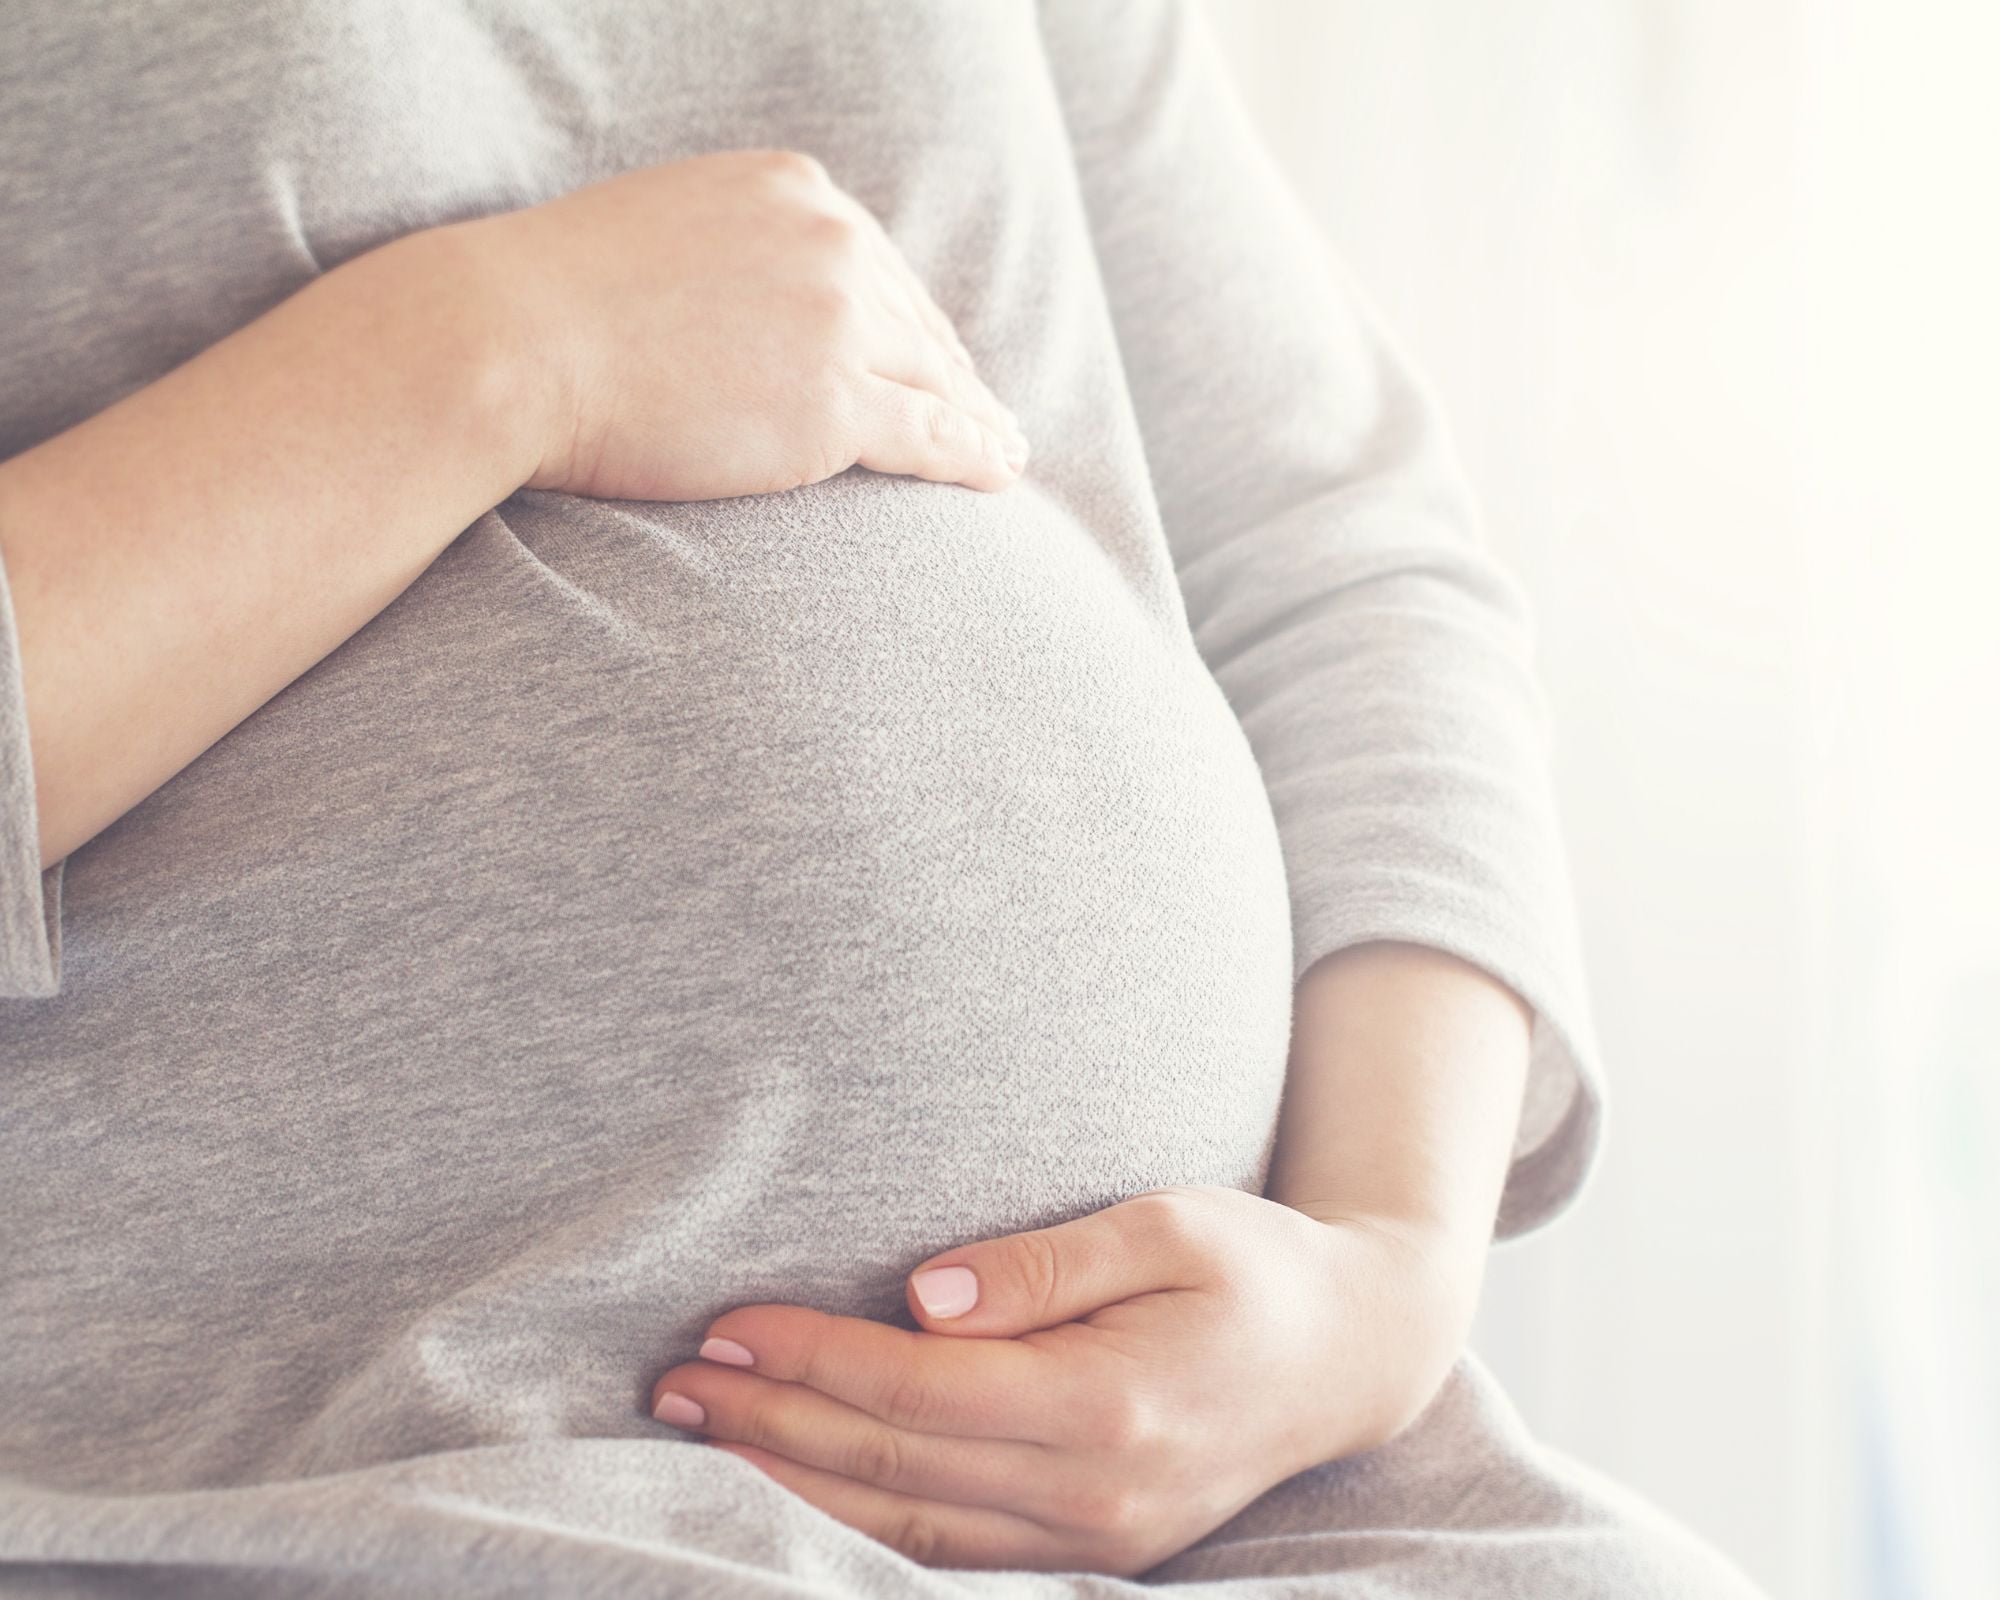 علاج الغثيان والقيء عند الحامل بالاعشاب